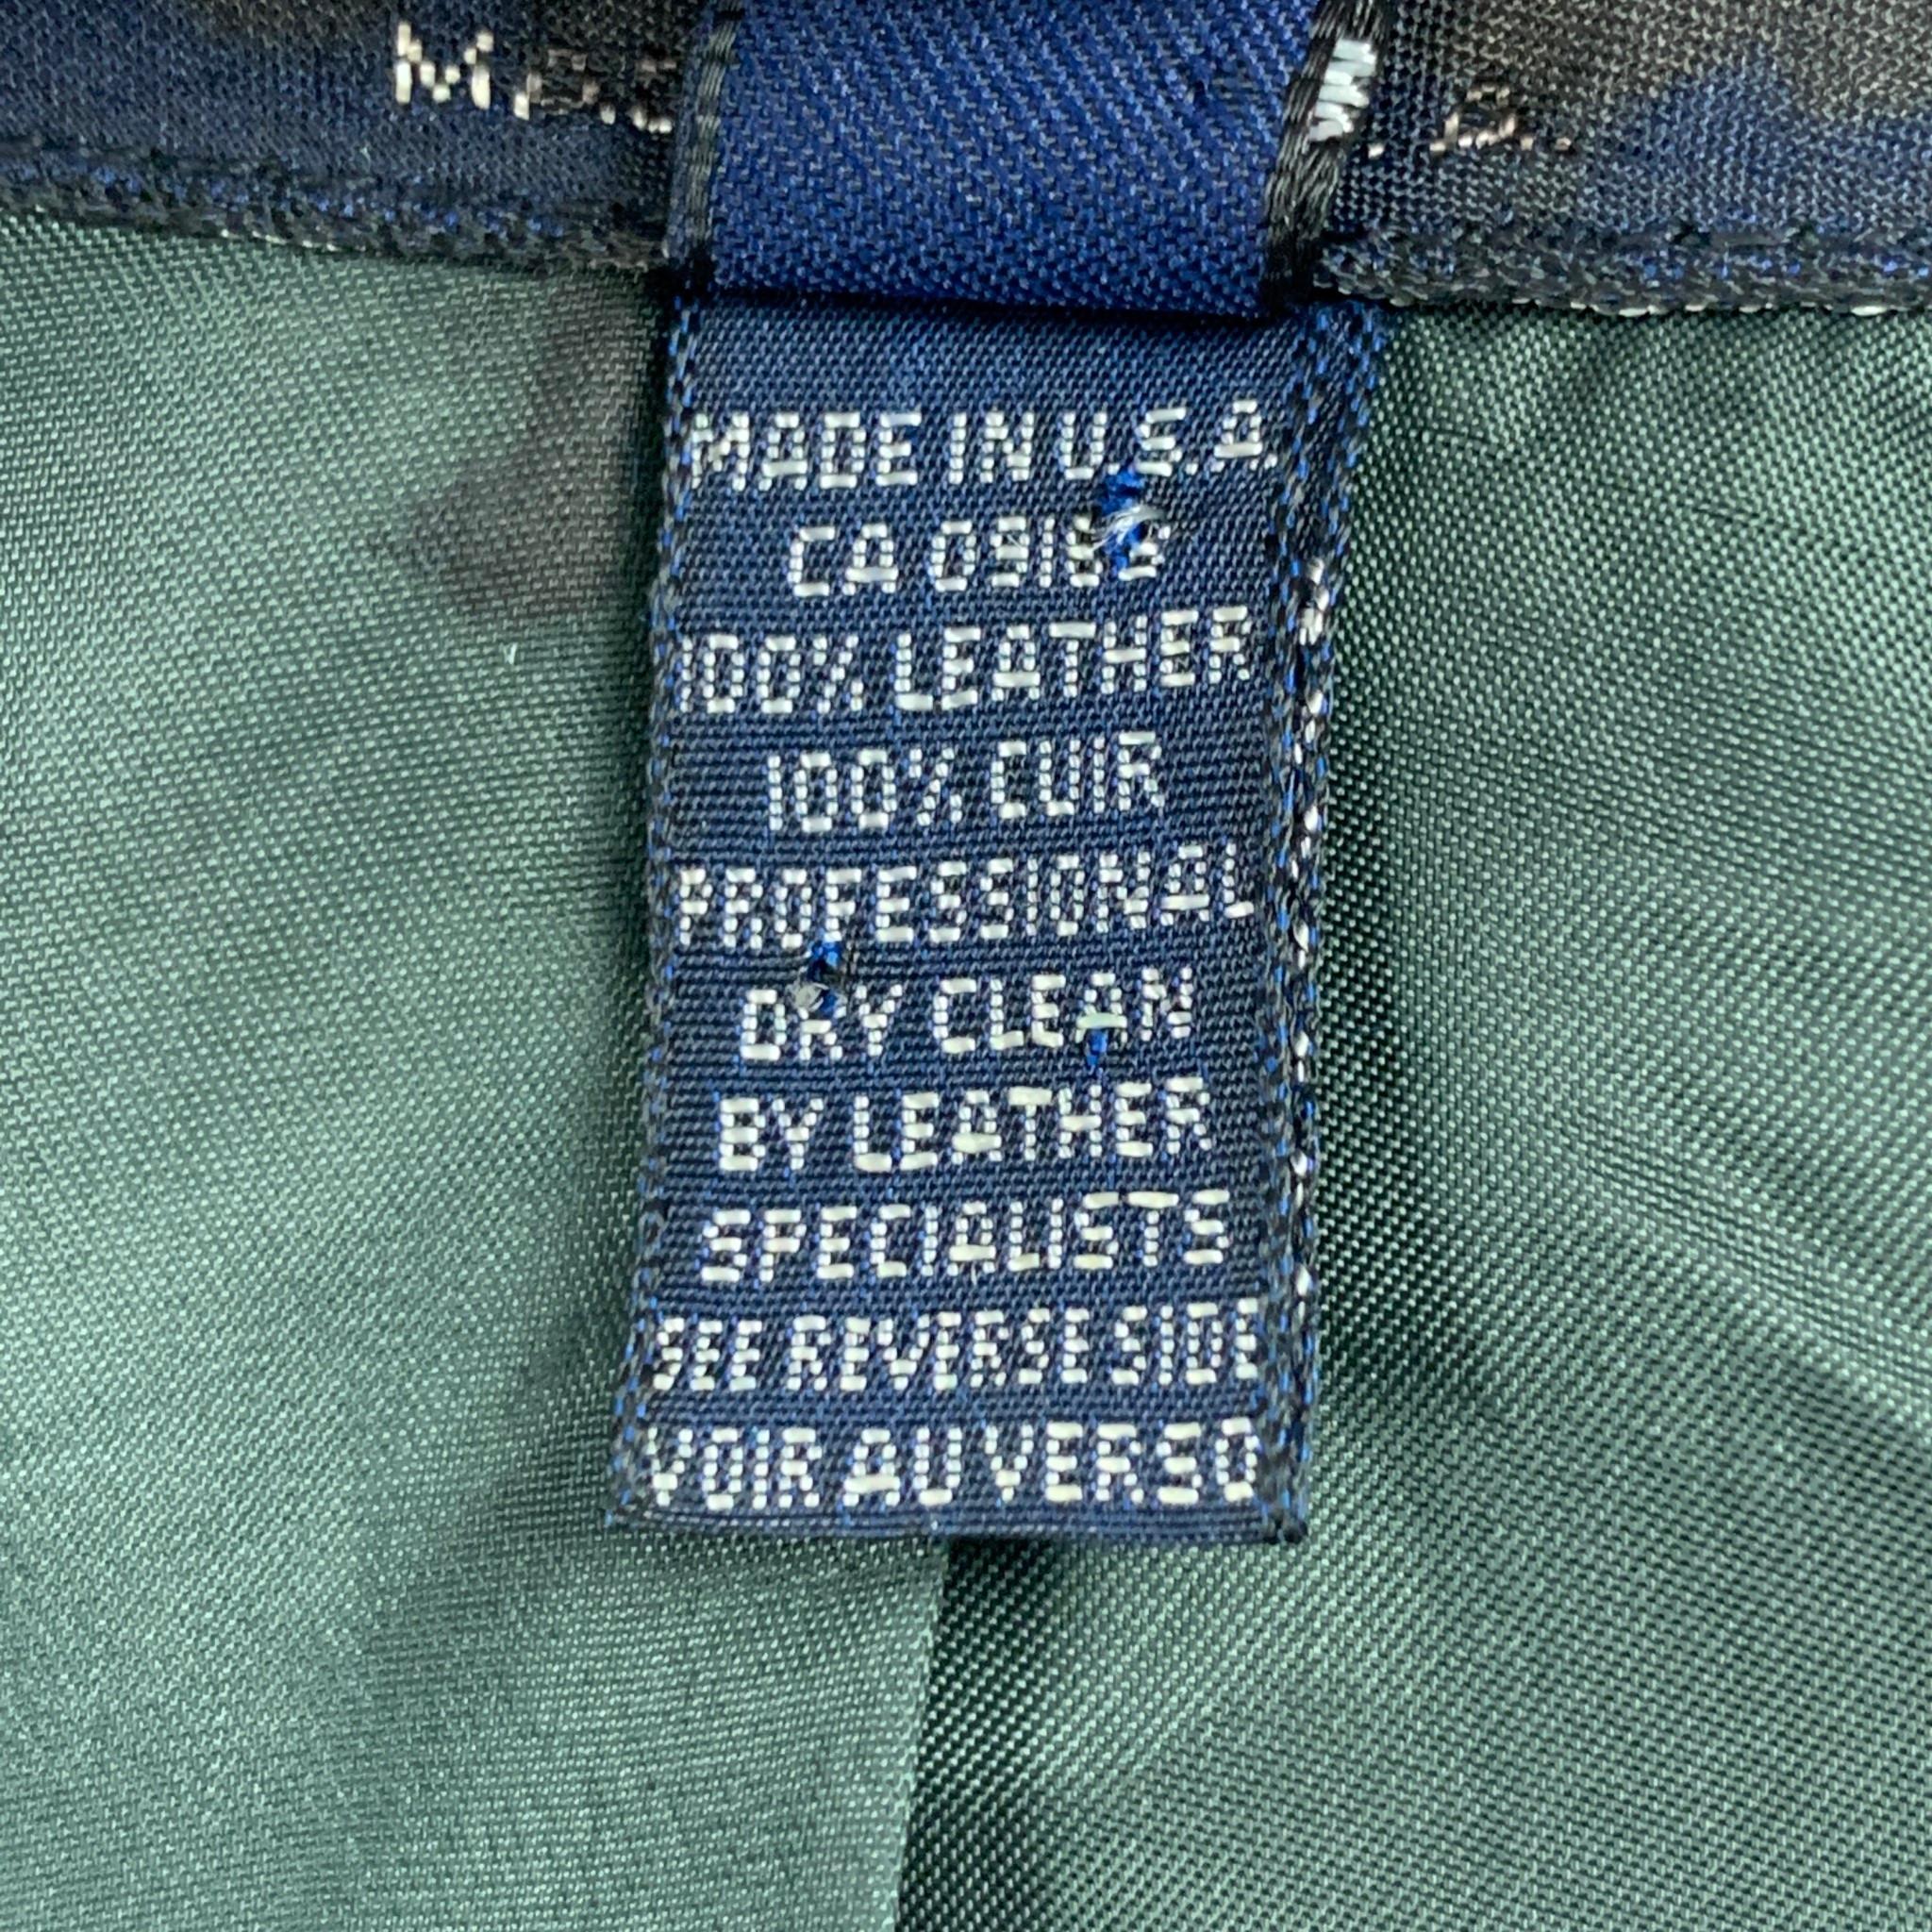 olive leather jacket